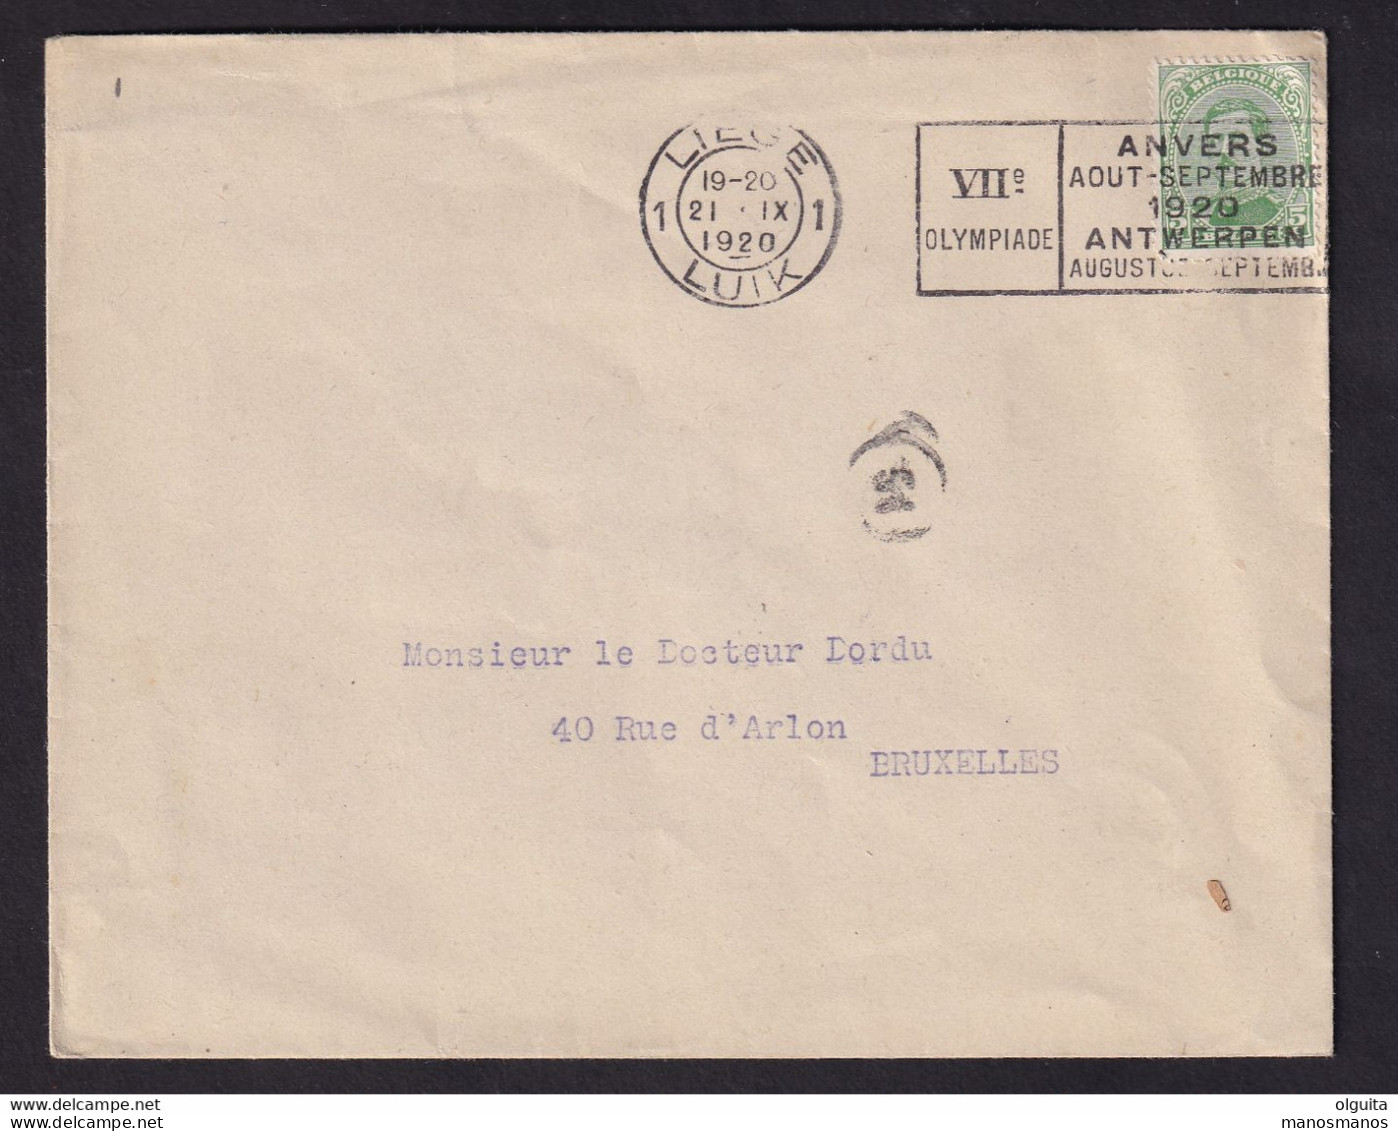 DDCC 348 -- LES IMPRIMES - Enveloppe Ouverte TP Albert 5 C - Cachet Mécanique LIEGE 1 Jeux Olympiques 1920 - Sommer 1920: Antwerpen